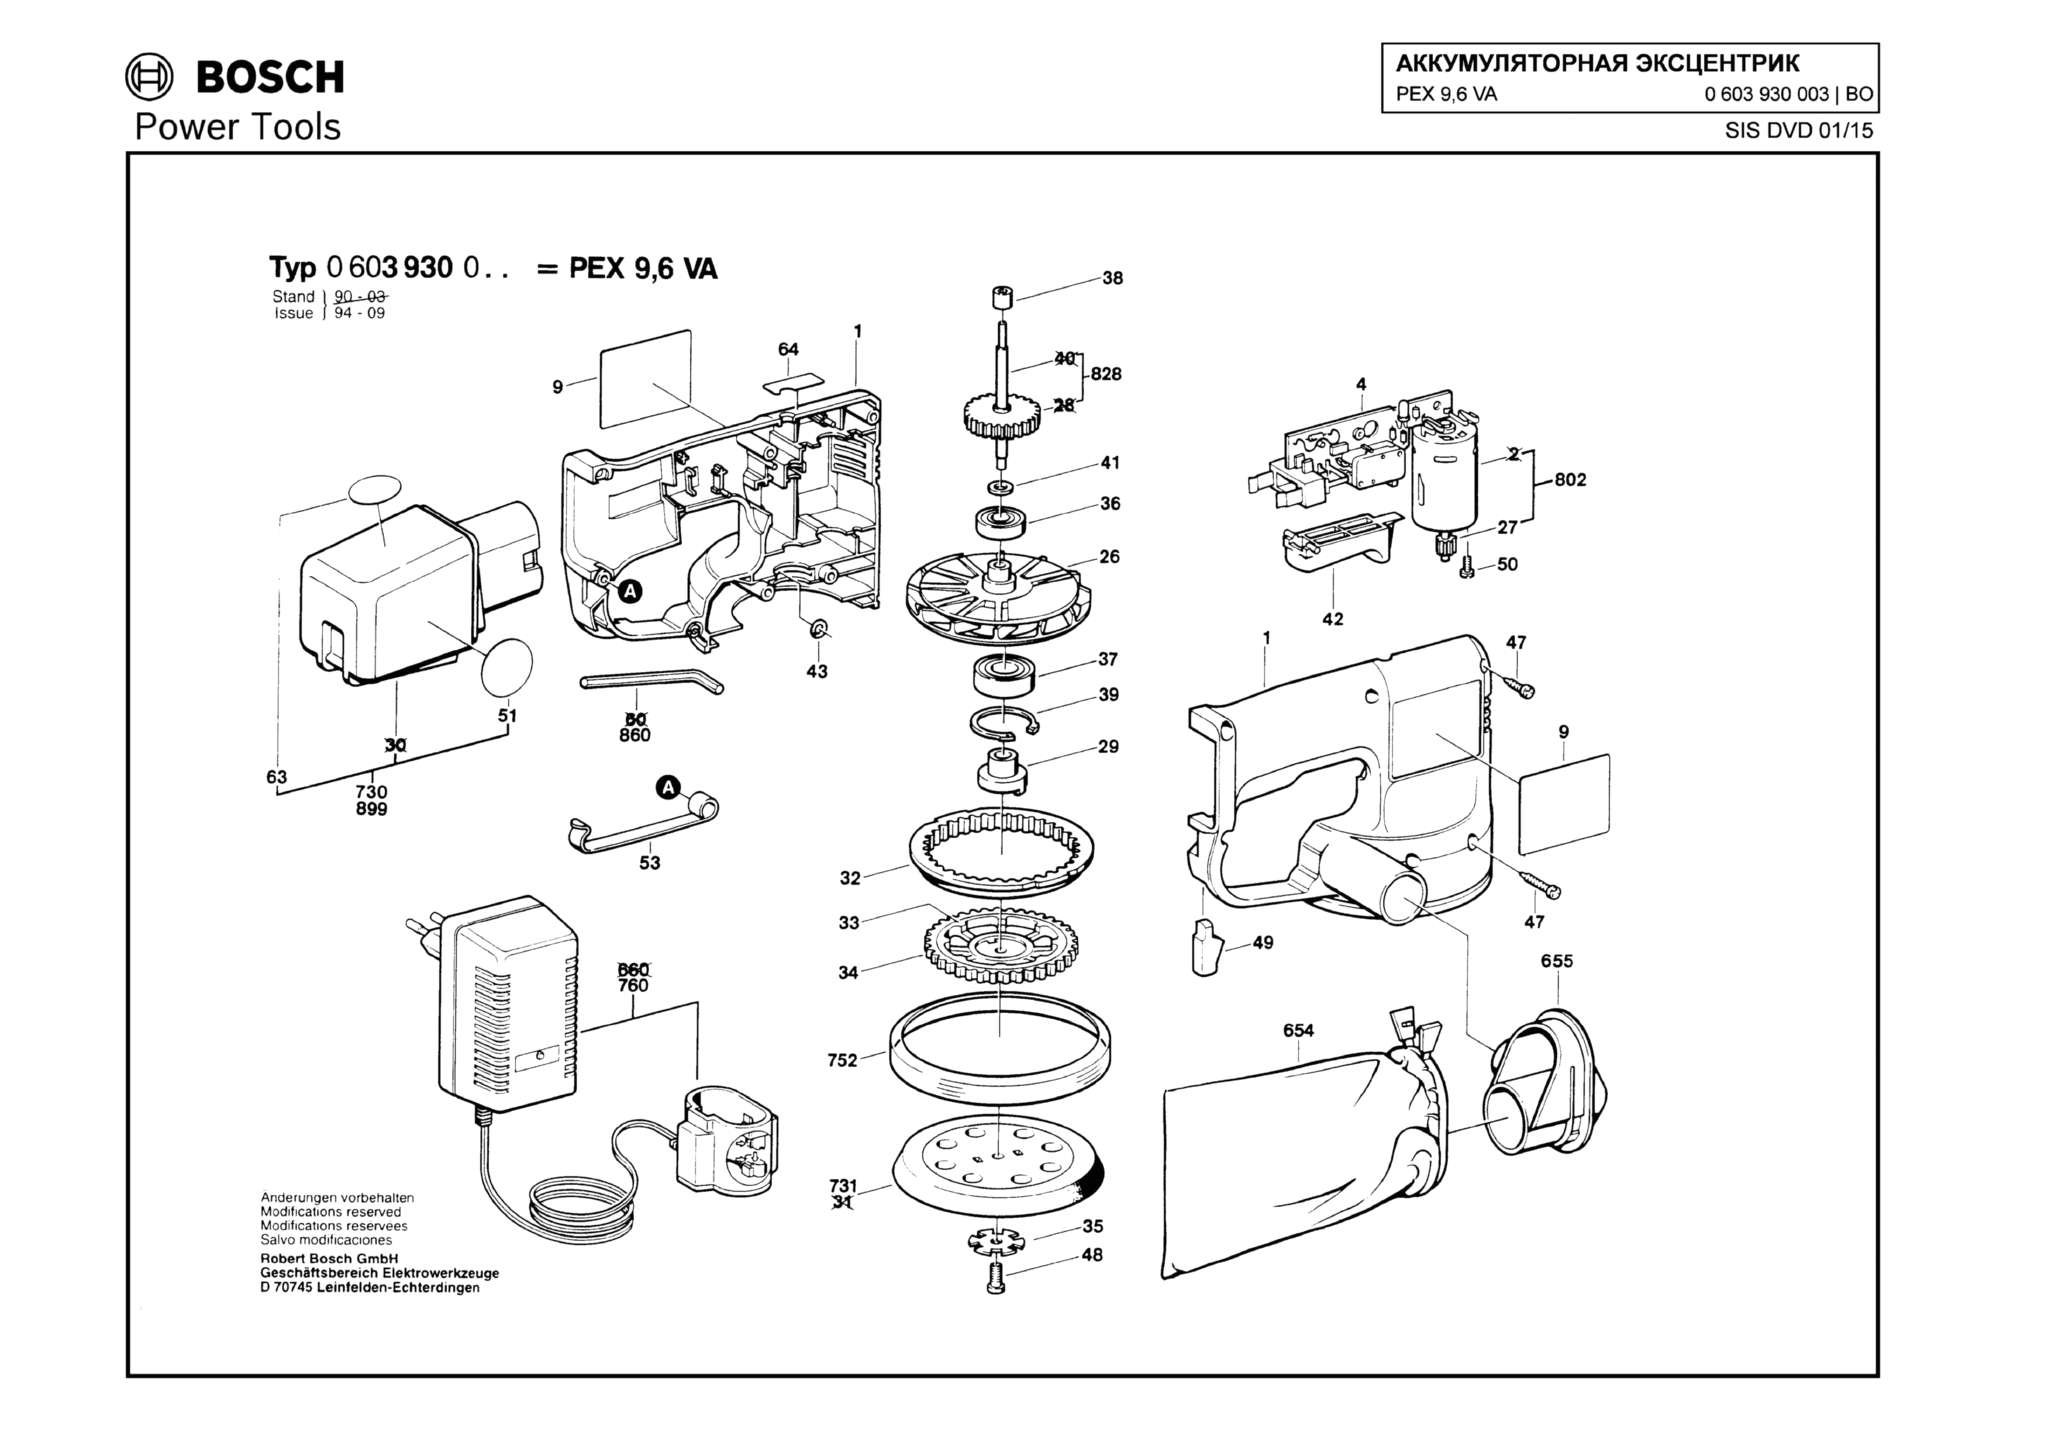 Запчасти, схема и деталировка Bosch PEX 9,6 VA (ТИП 0603930003)